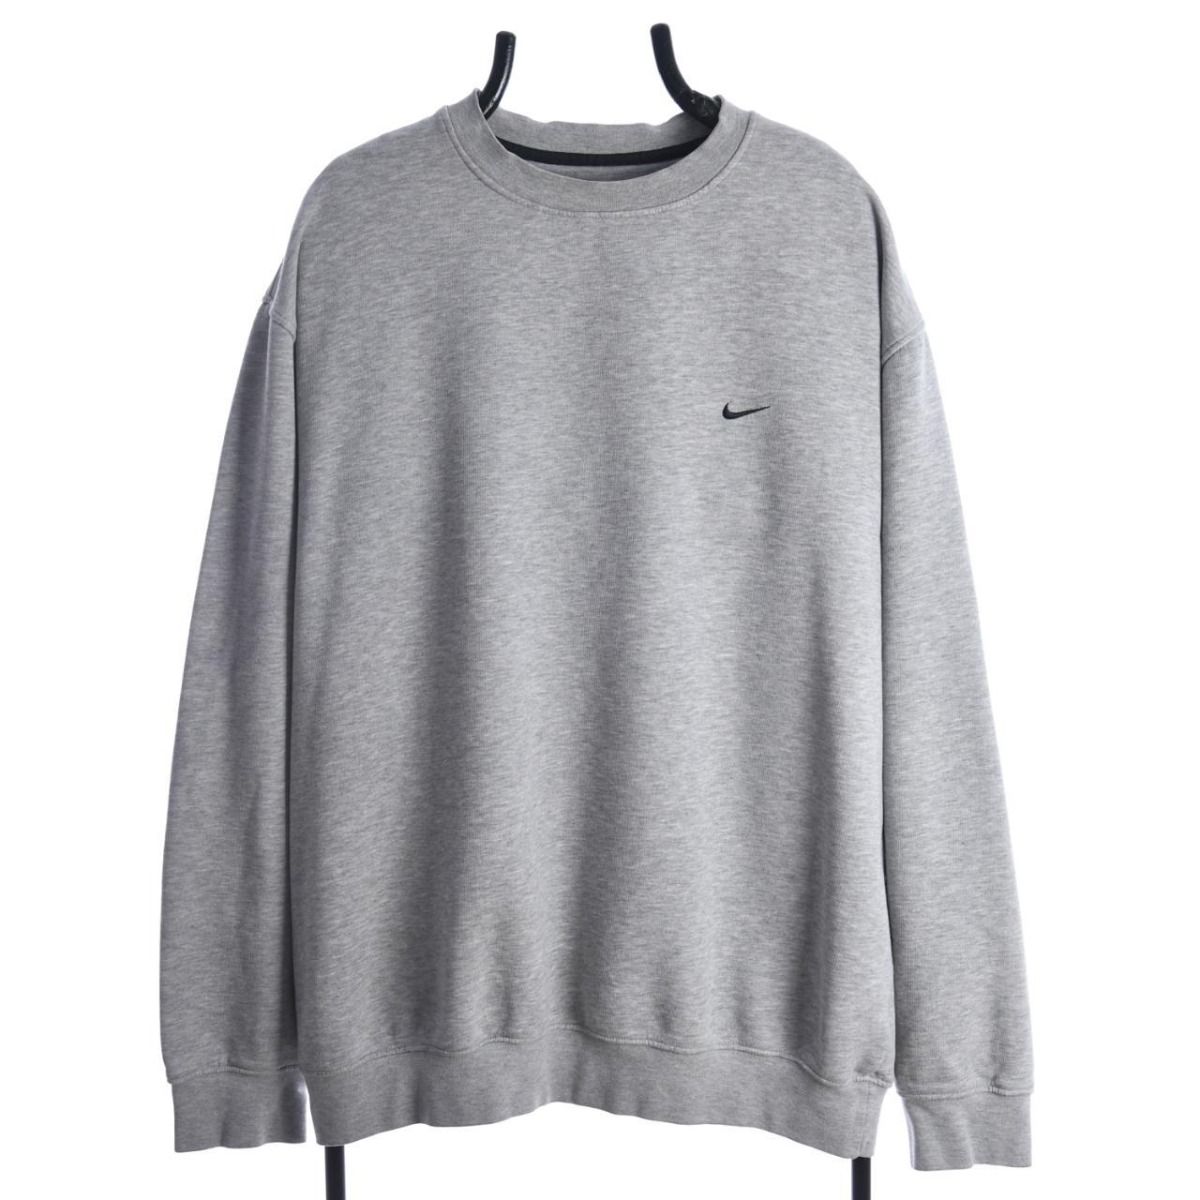 Nike Early 2000s Grey Sweatshirt